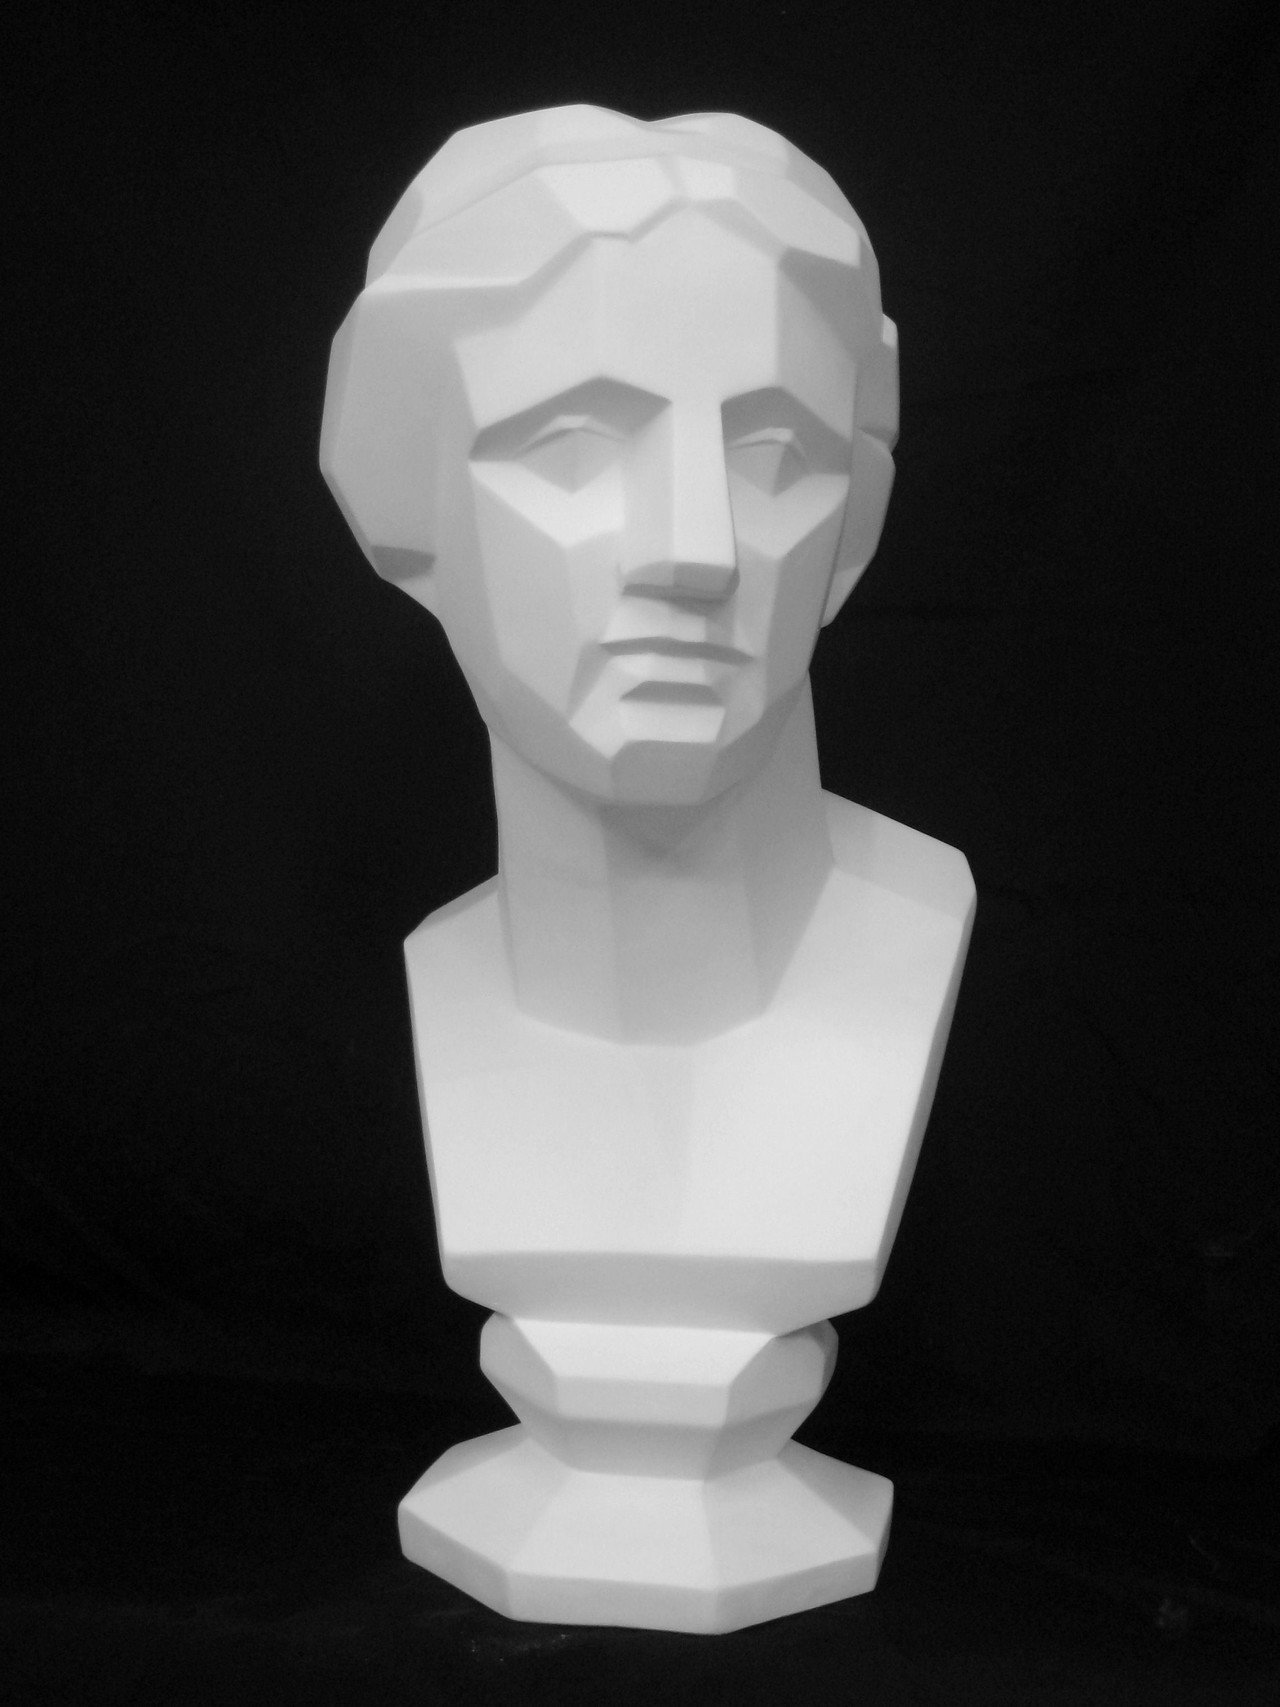 石膏像 「ミロのヴィーナス 」胸像 デッサン 美術 インテリア - 彫刻